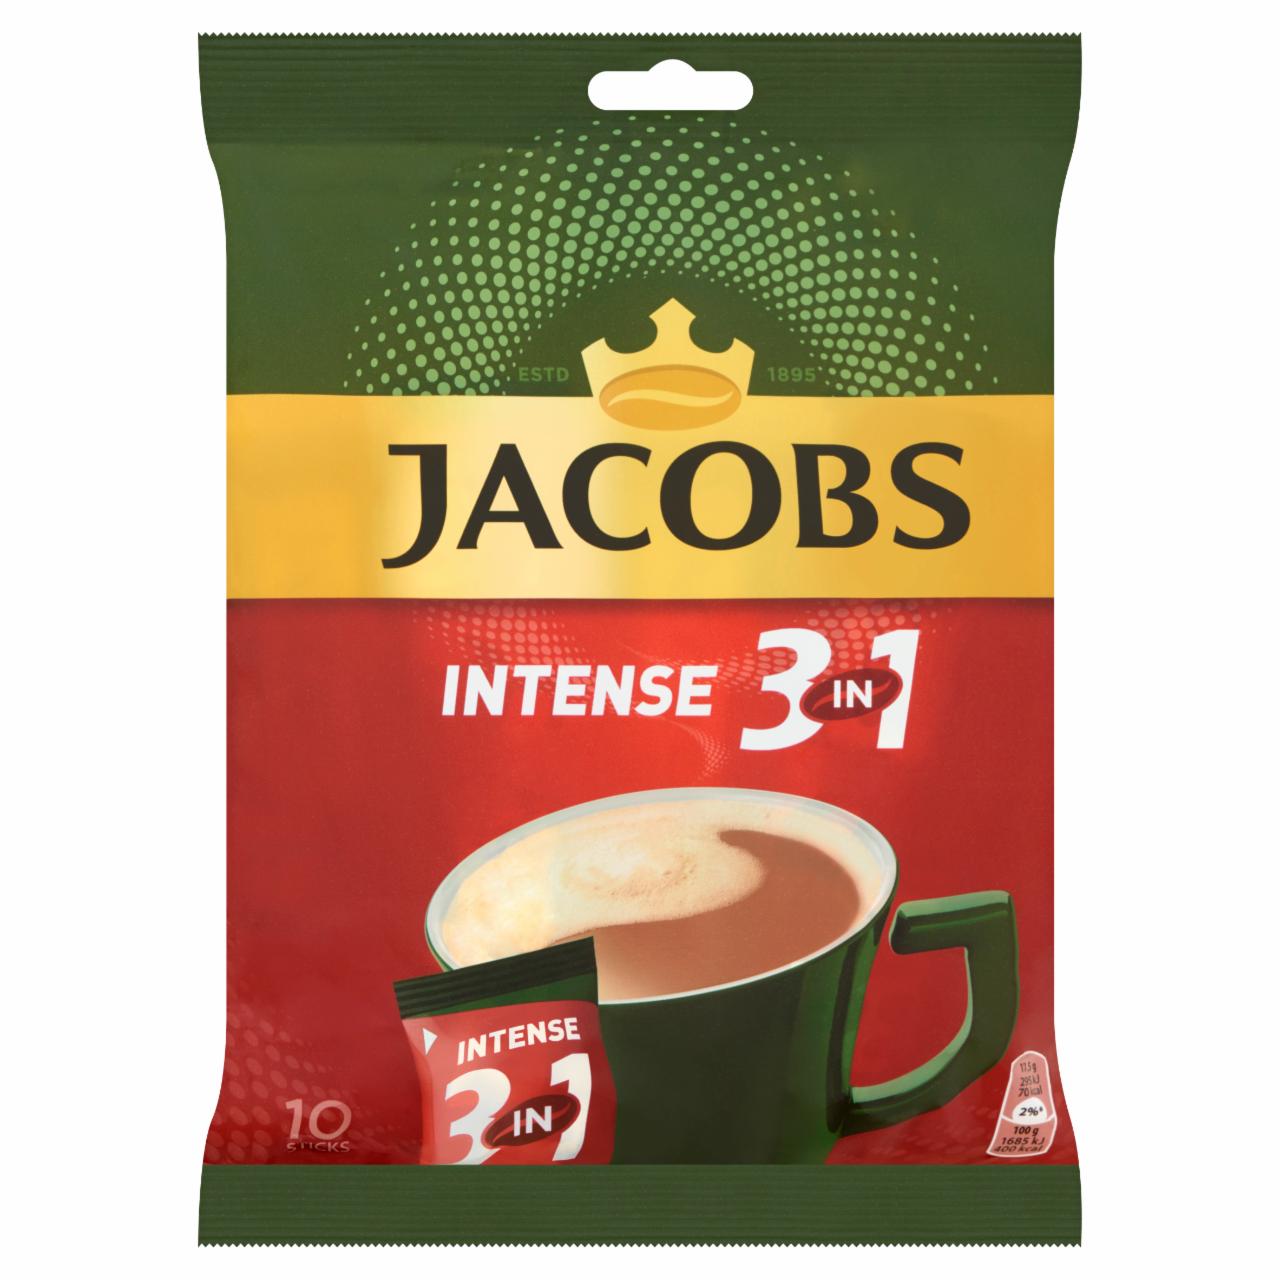 Képek - Jacobs Intense 3in1 azonnal oldódó kávéitalpor 10 db 175 g